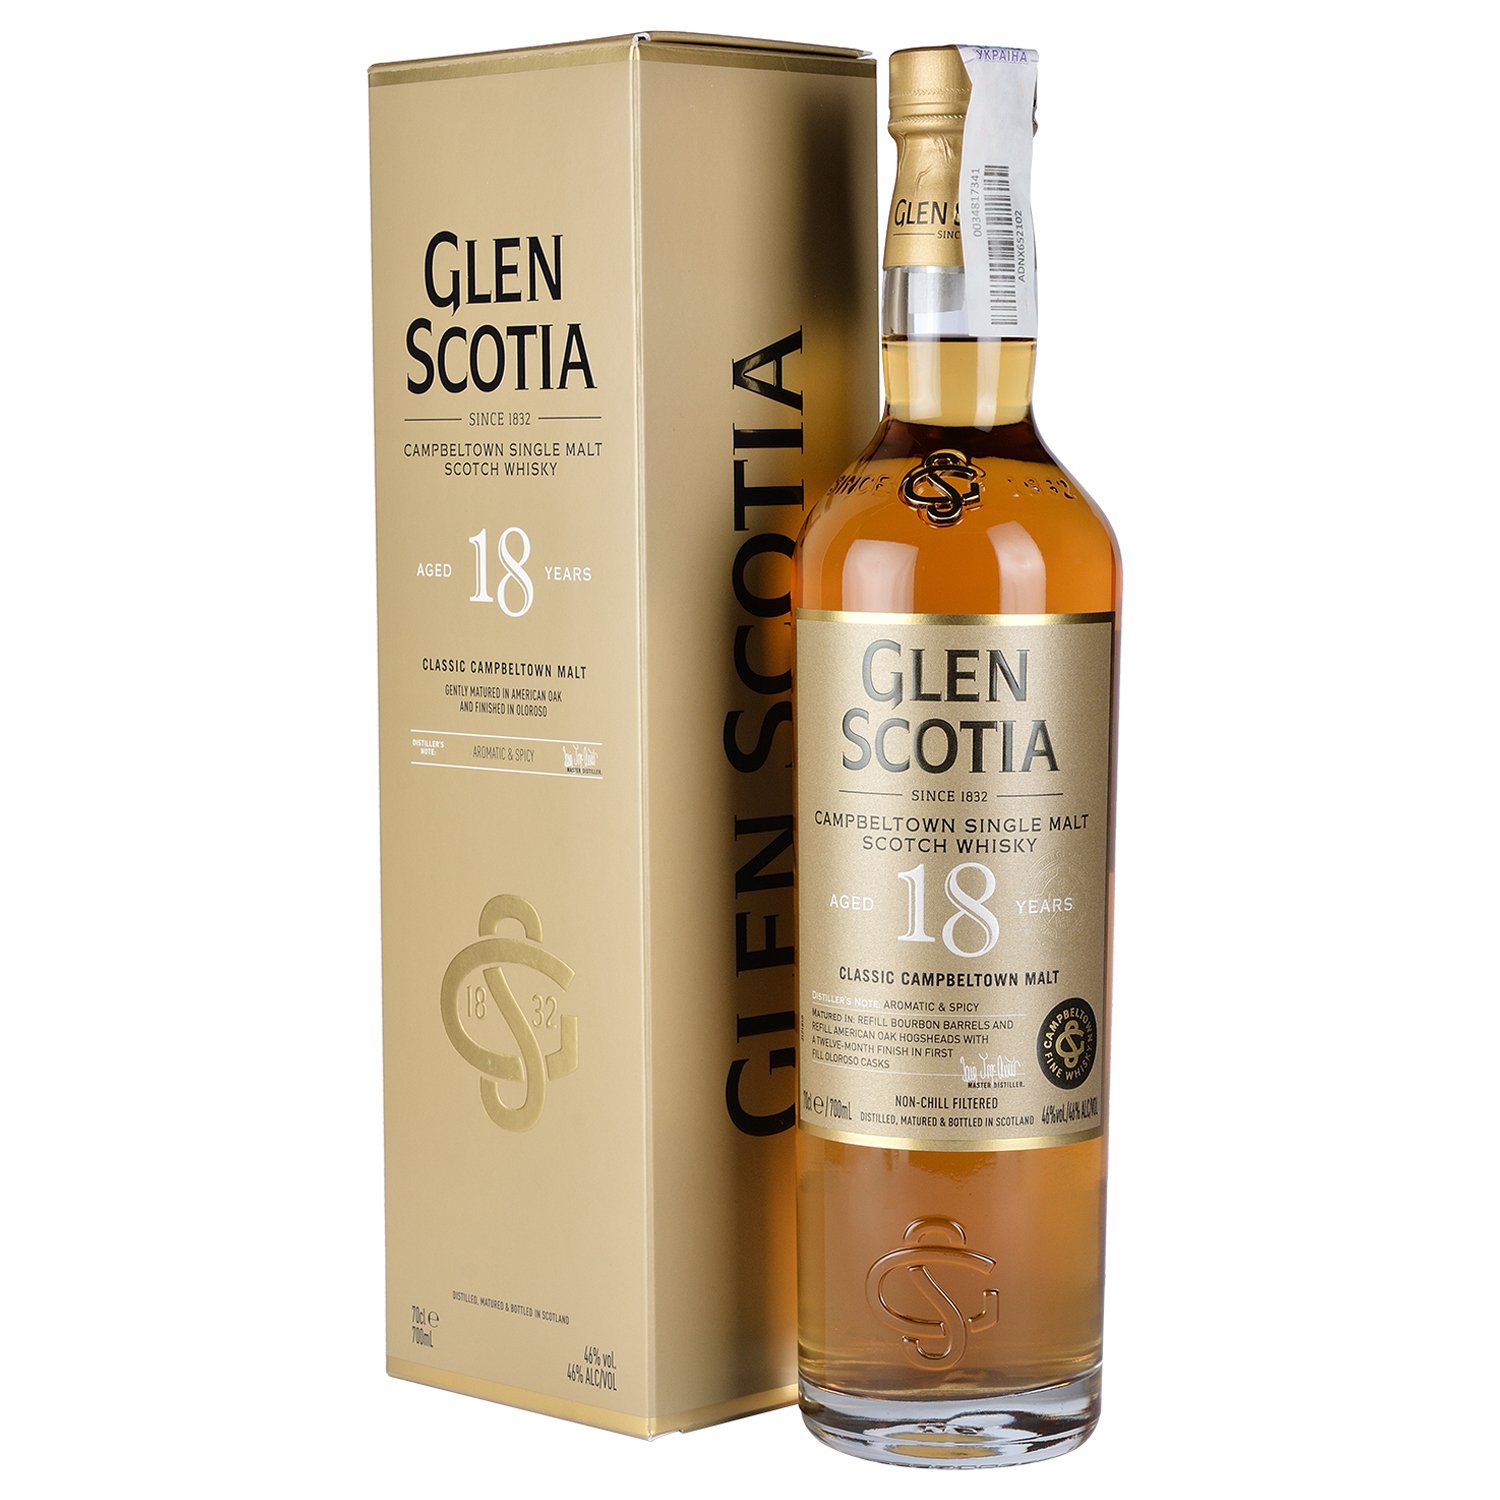 Виски Glen Scotia Single Malt Scotch Whisky 18 yo, в подарочной упаковке, 46%, 0,7 л - фото 1